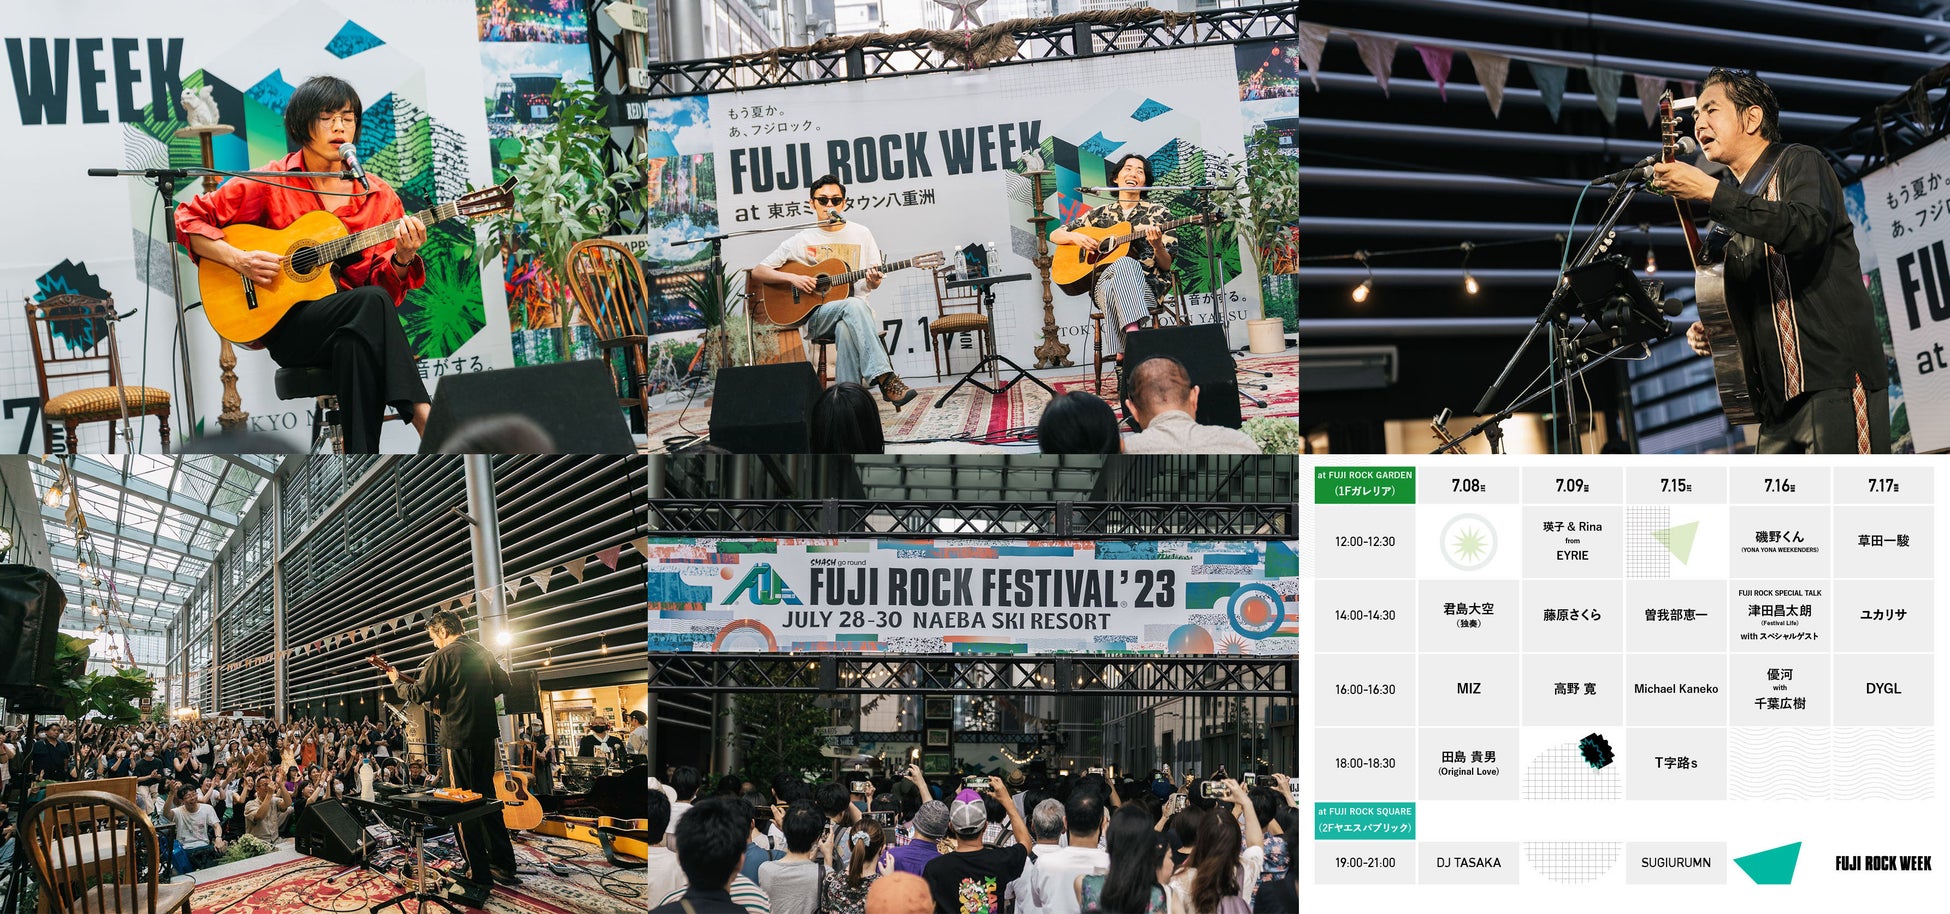 フジロックプレイベント「FUJI ROCK WEEK at 東京ミッドタウン八重洲」オフィシャルイベントレポートのサブ画像1